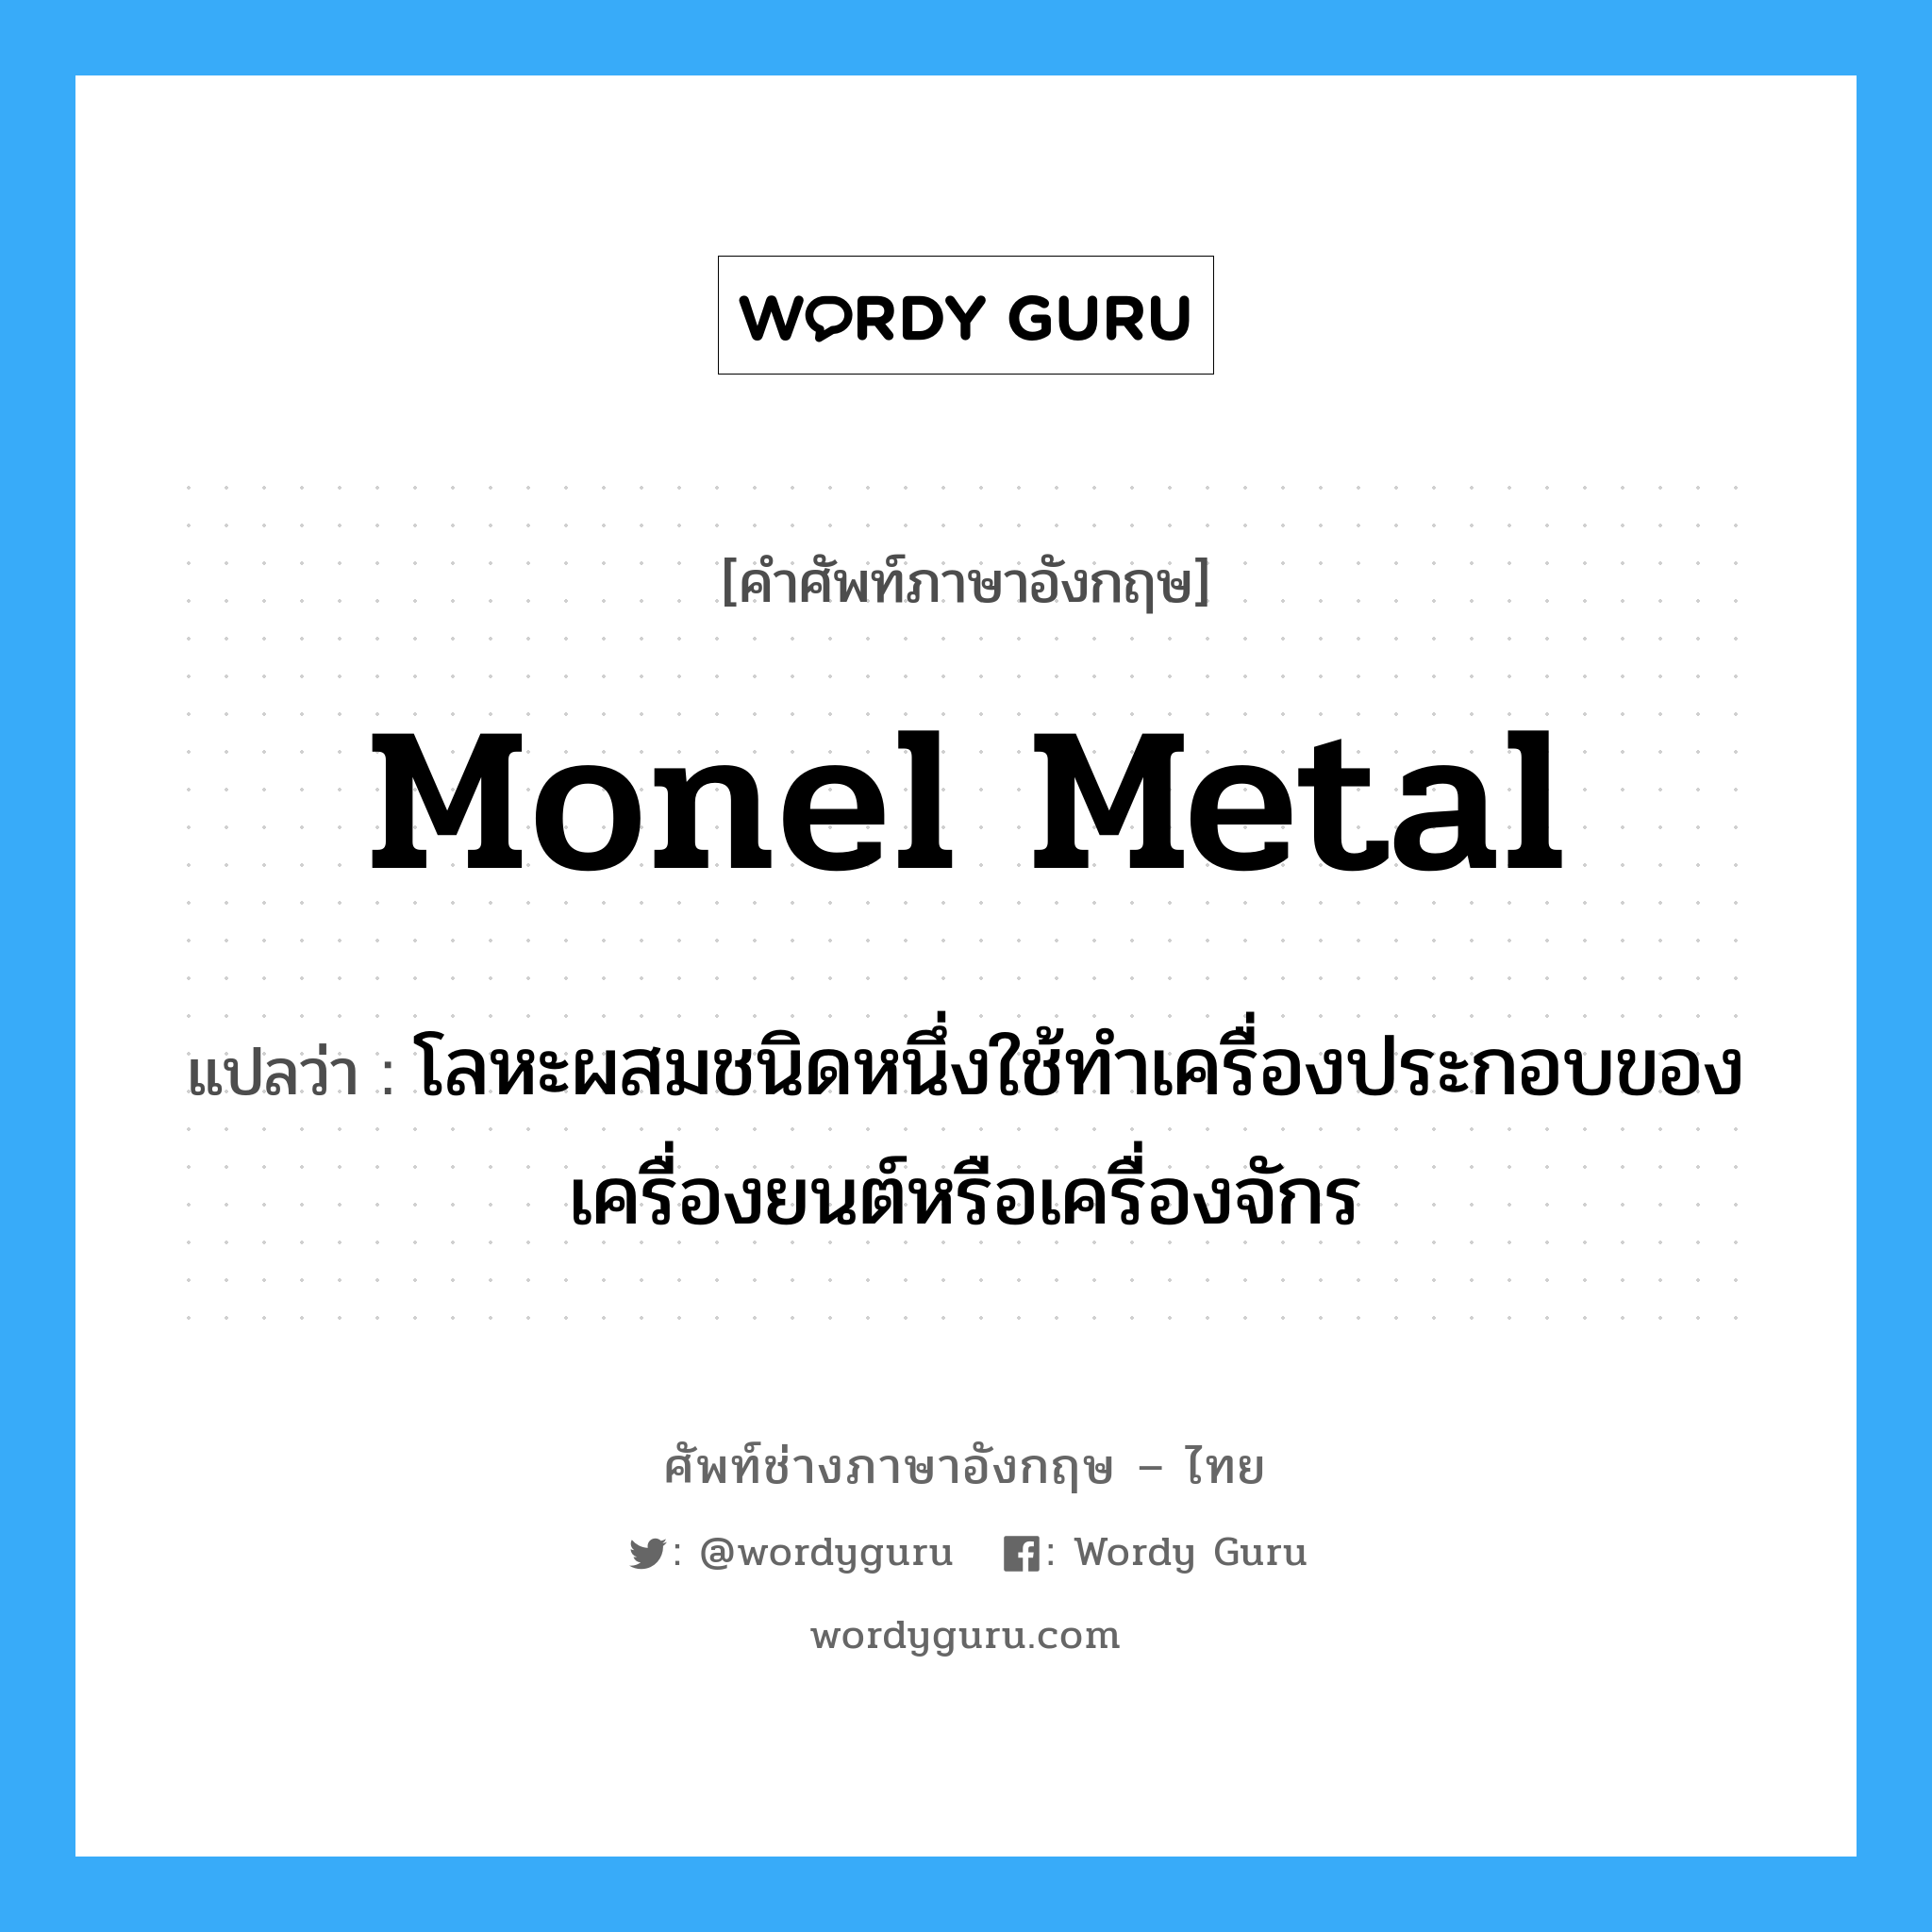 Monel metal แปลว่า?, คำศัพท์ช่างภาษาอังกฤษ - ไทย Monel metal คำศัพท์ภาษาอังกฤษ Monel metal แปลว่า โลหะผสมชนิดหนึ่งใช้ทำเครื่องประกอบของเครื่องยนต์หรือเครื่องจักร